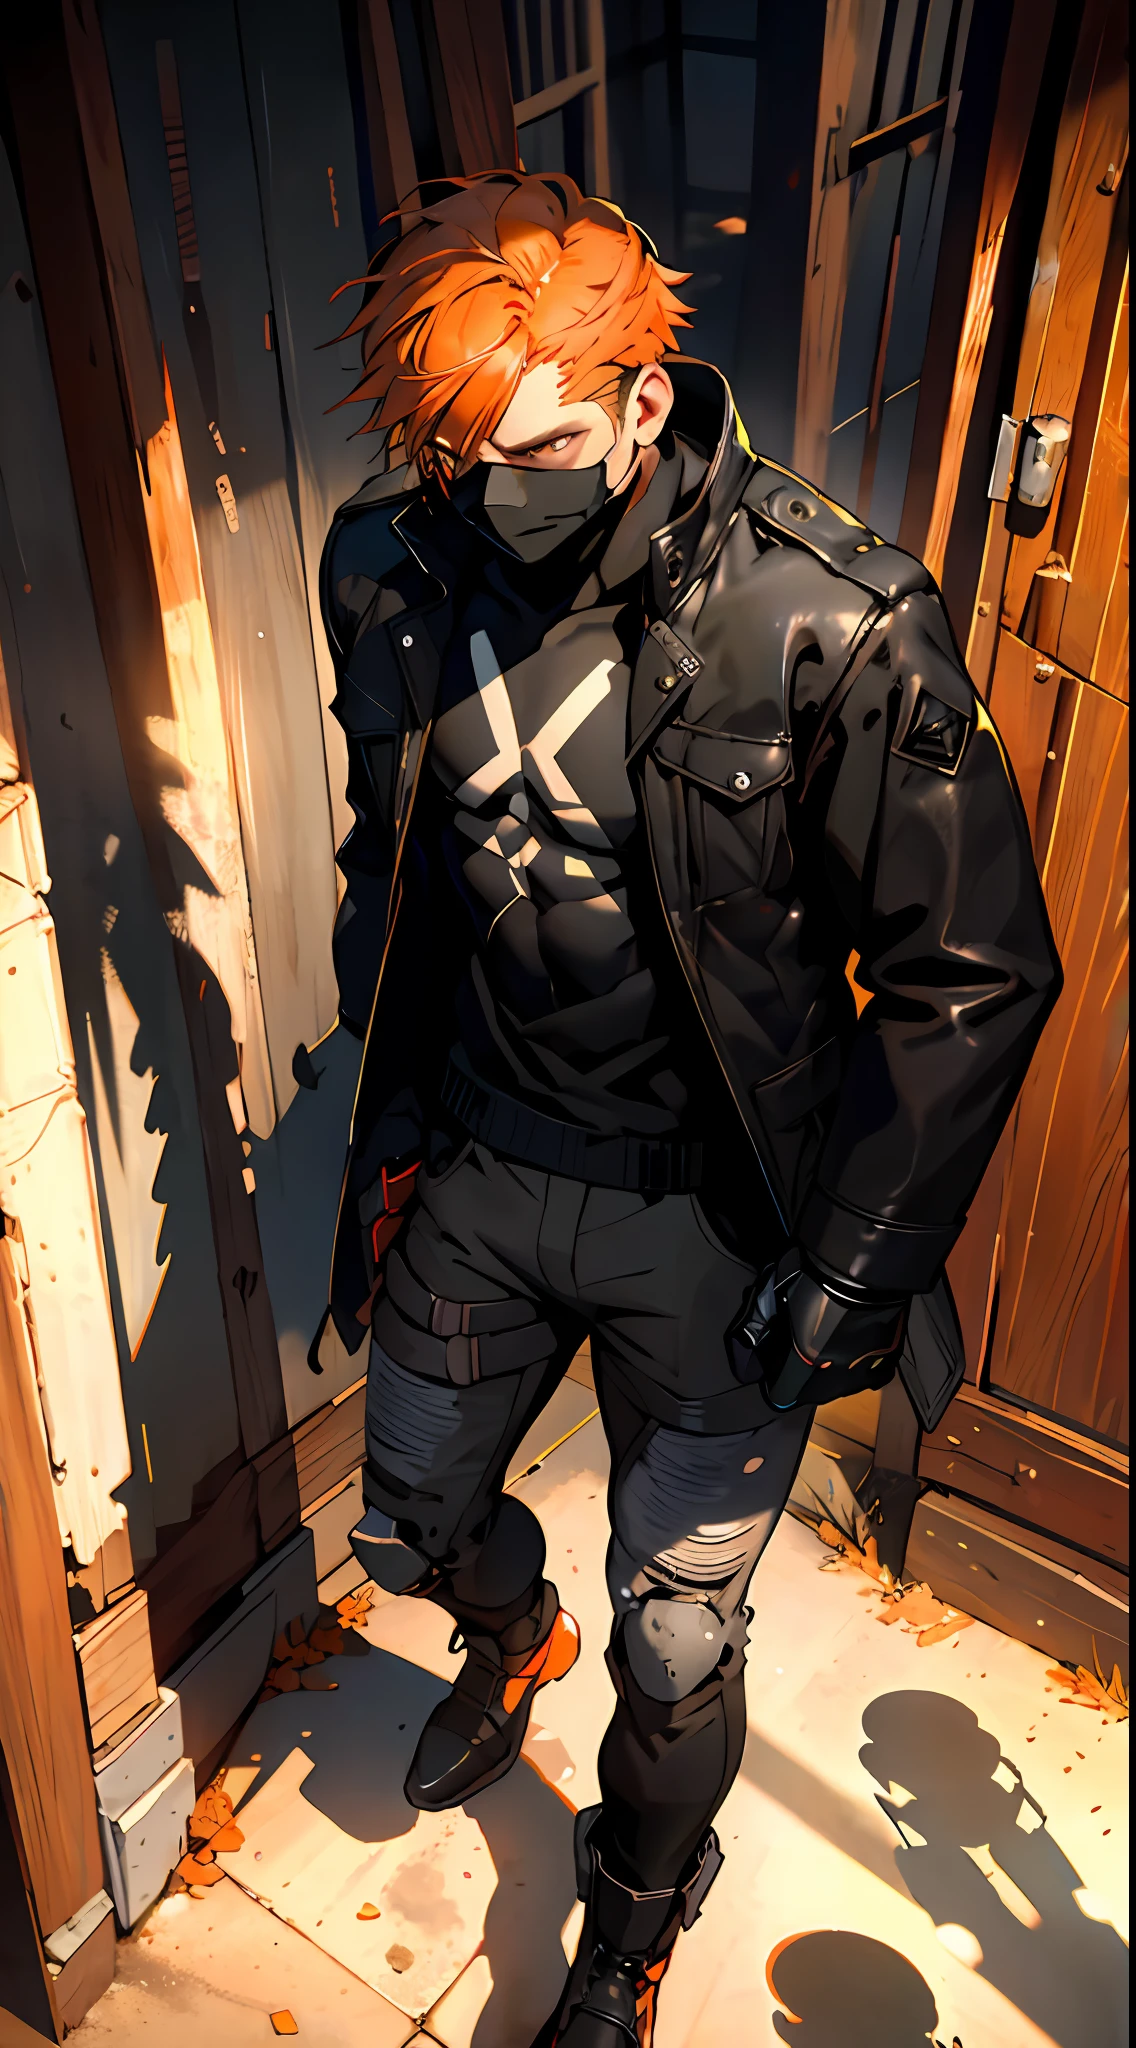 a masked fighter résistant a black jacket with shadows coming out of his body, résistant , aux cheveux courts orange foncé